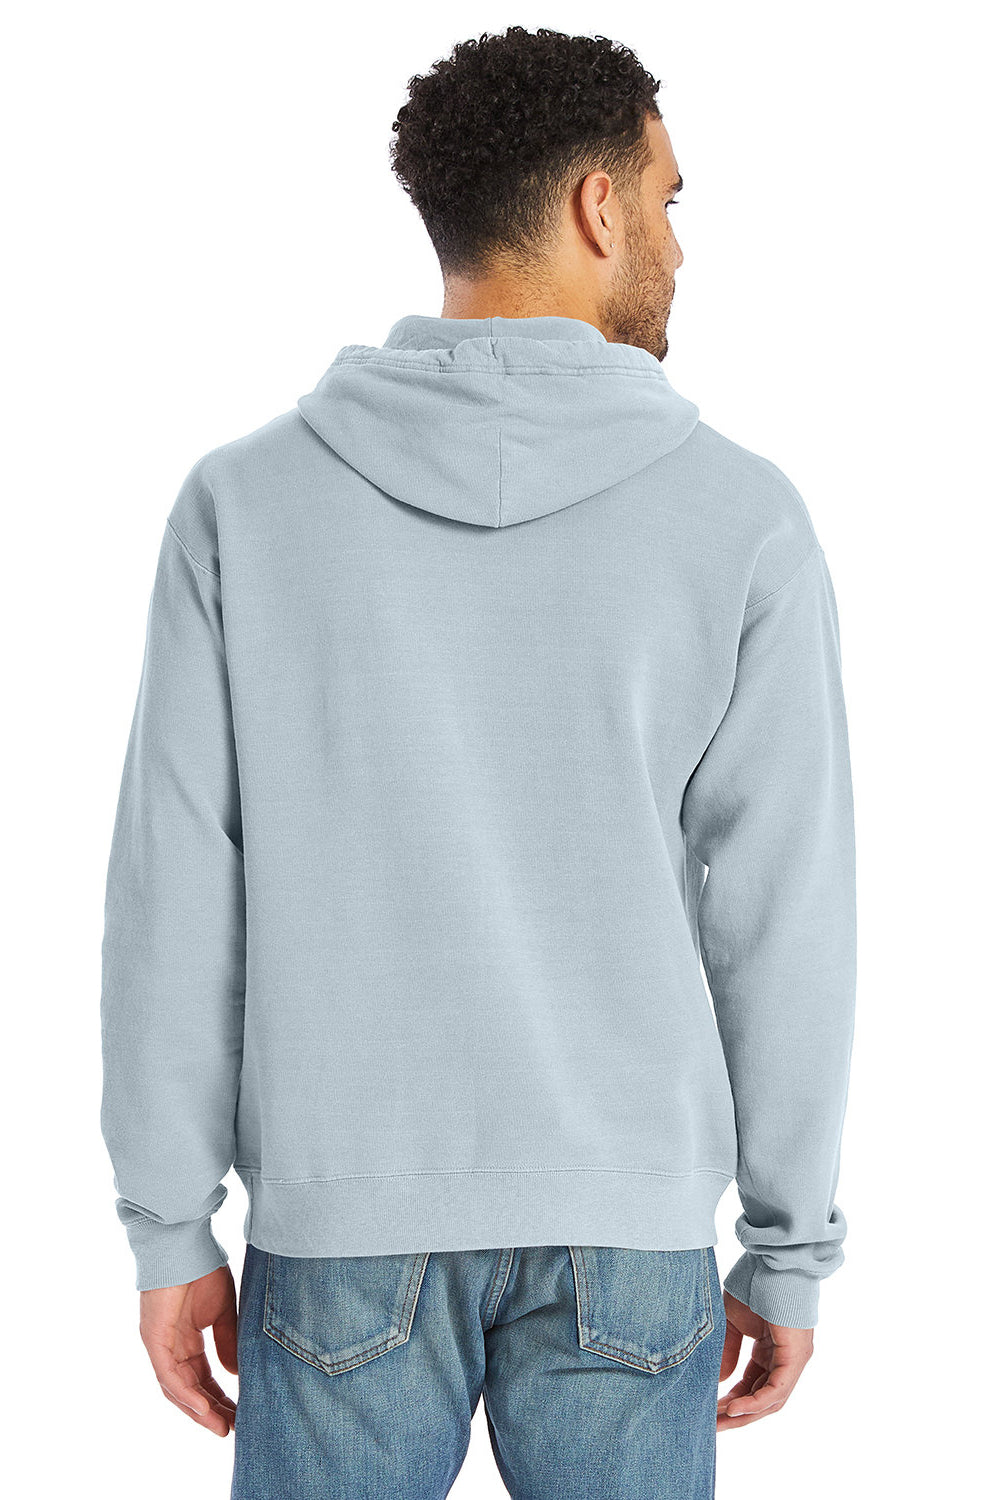 ComfortWash by Hanes GDH450 Mens Hooded Sweatshirt Hoodie Soothing Blue Back